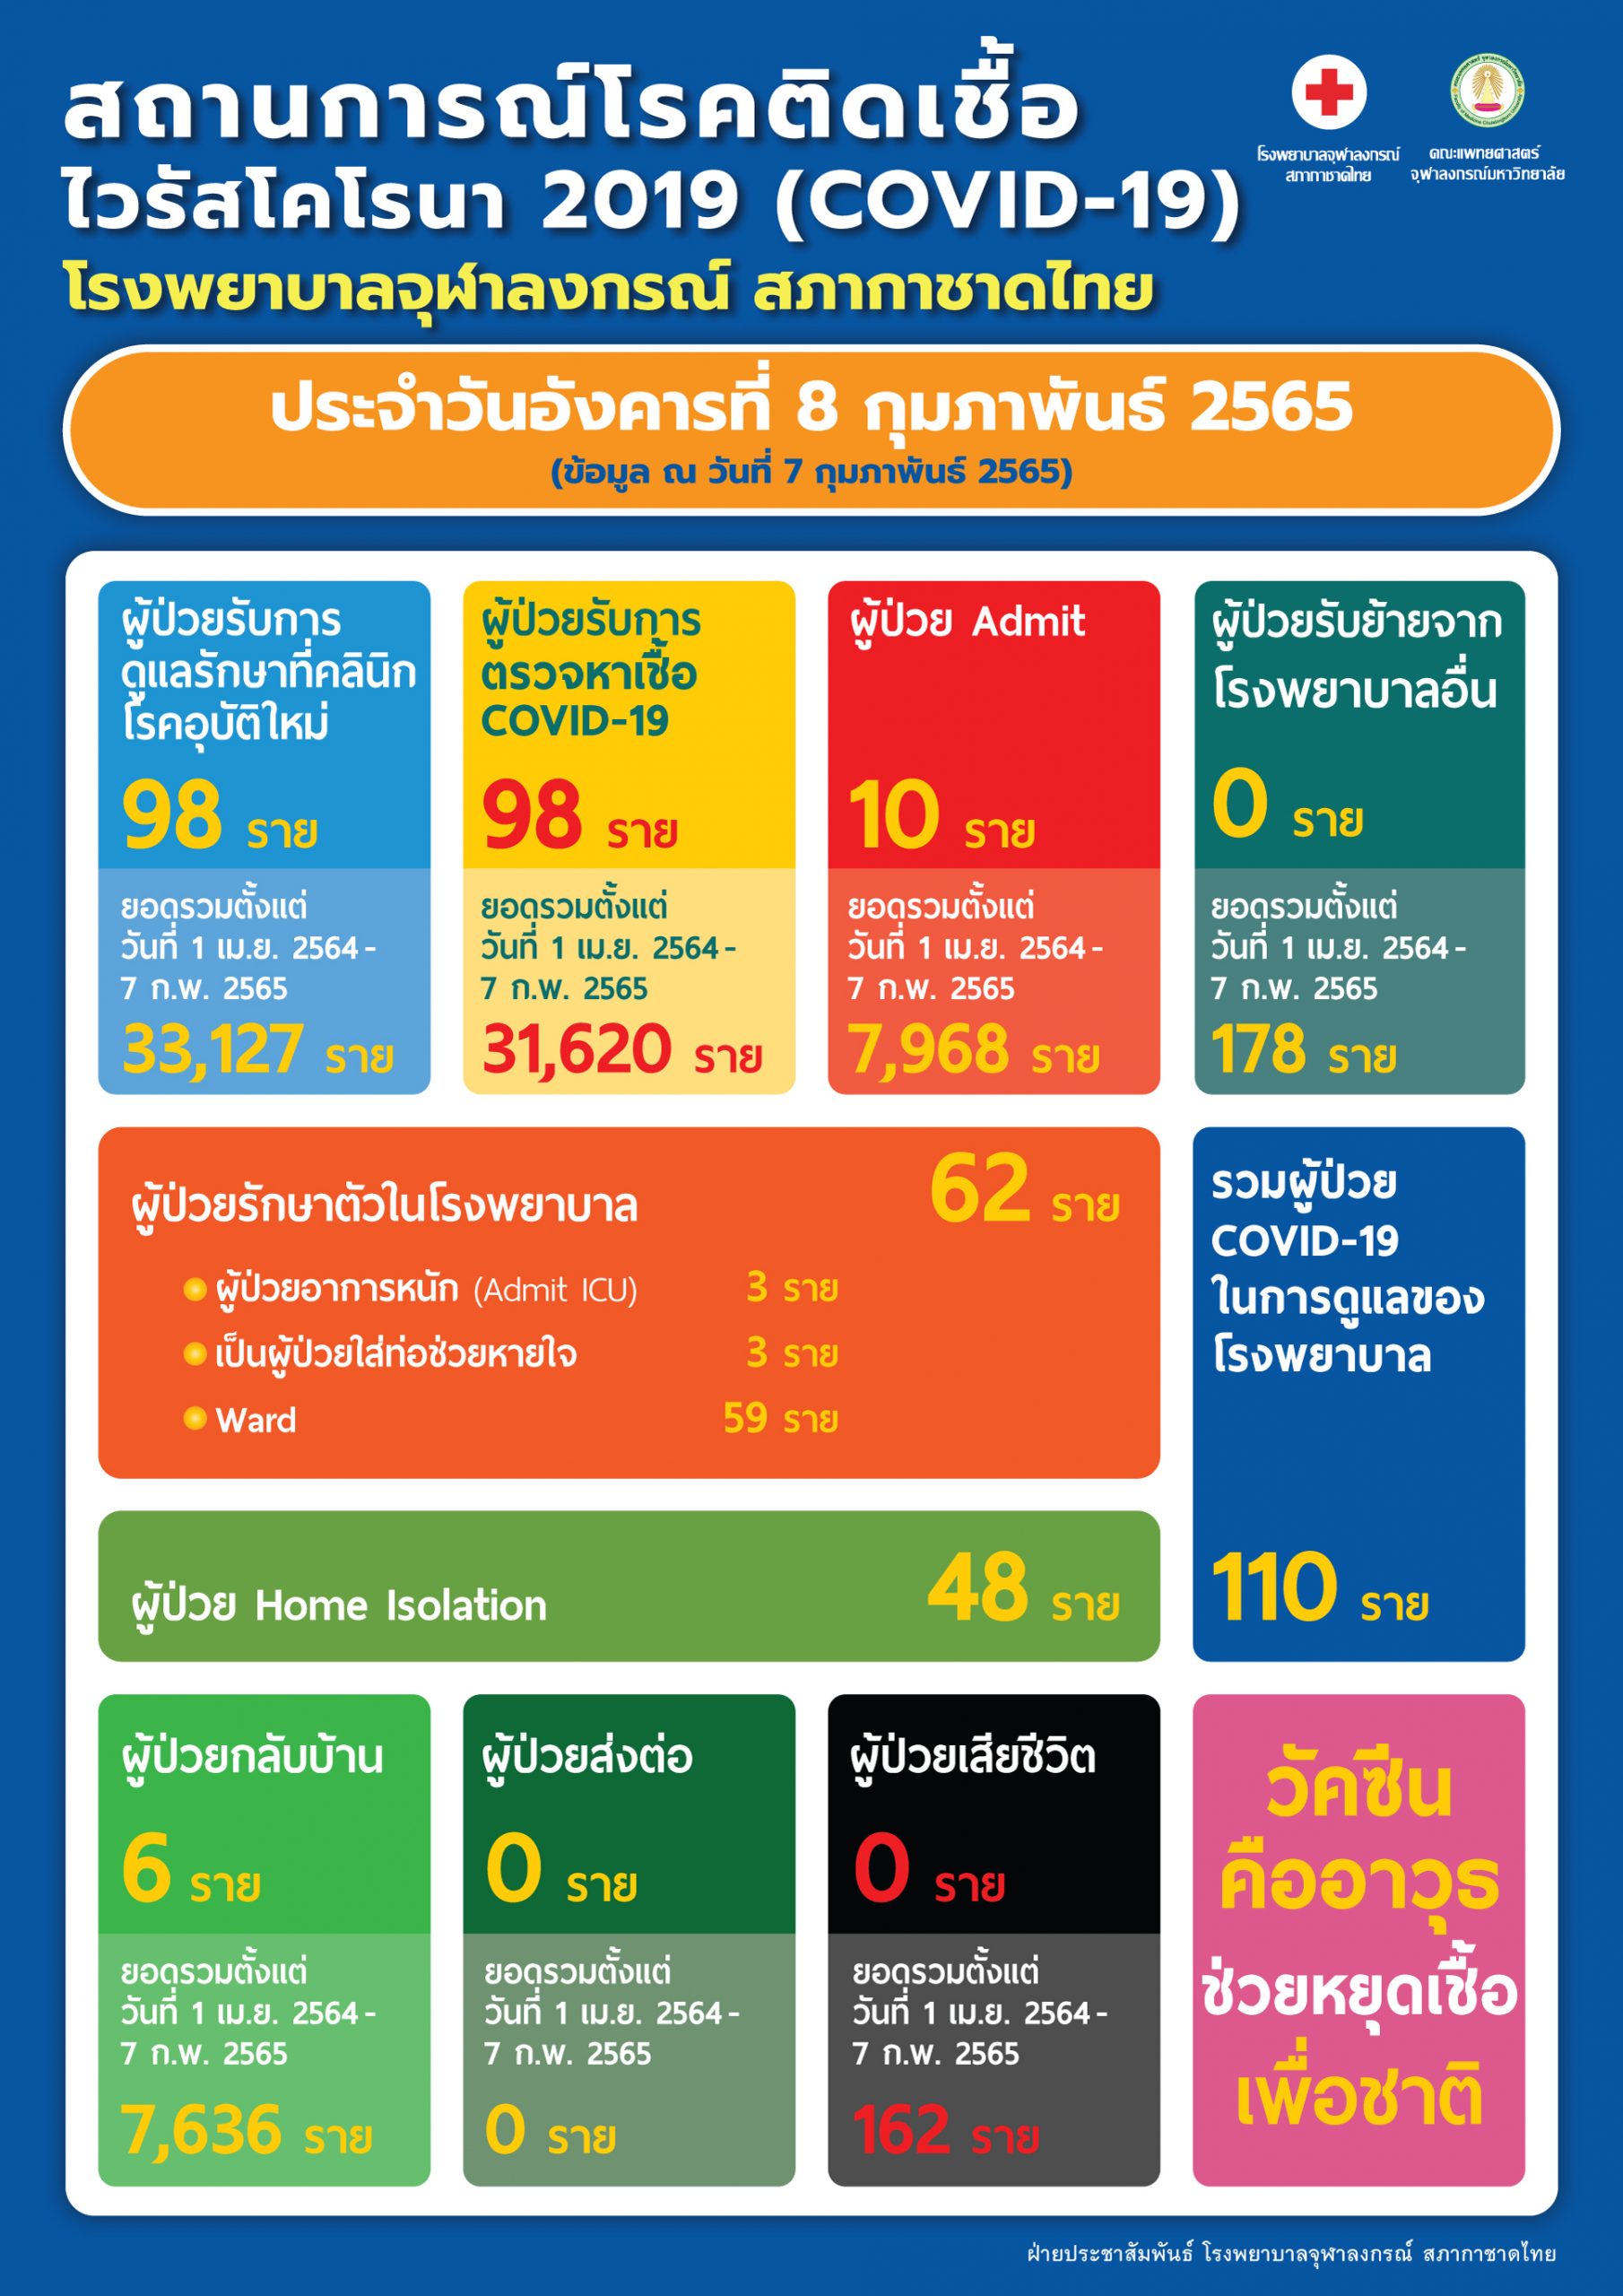 สถานการณ์โรคติดเชื้อไวรัสโคโรนา 2019 (COVID-19) โรงพยาบาลจุฬาลงกรณ์ สภากาชาดไทย ประจำวันอังคารที่ 8 กุมภาพันธ์ 2565